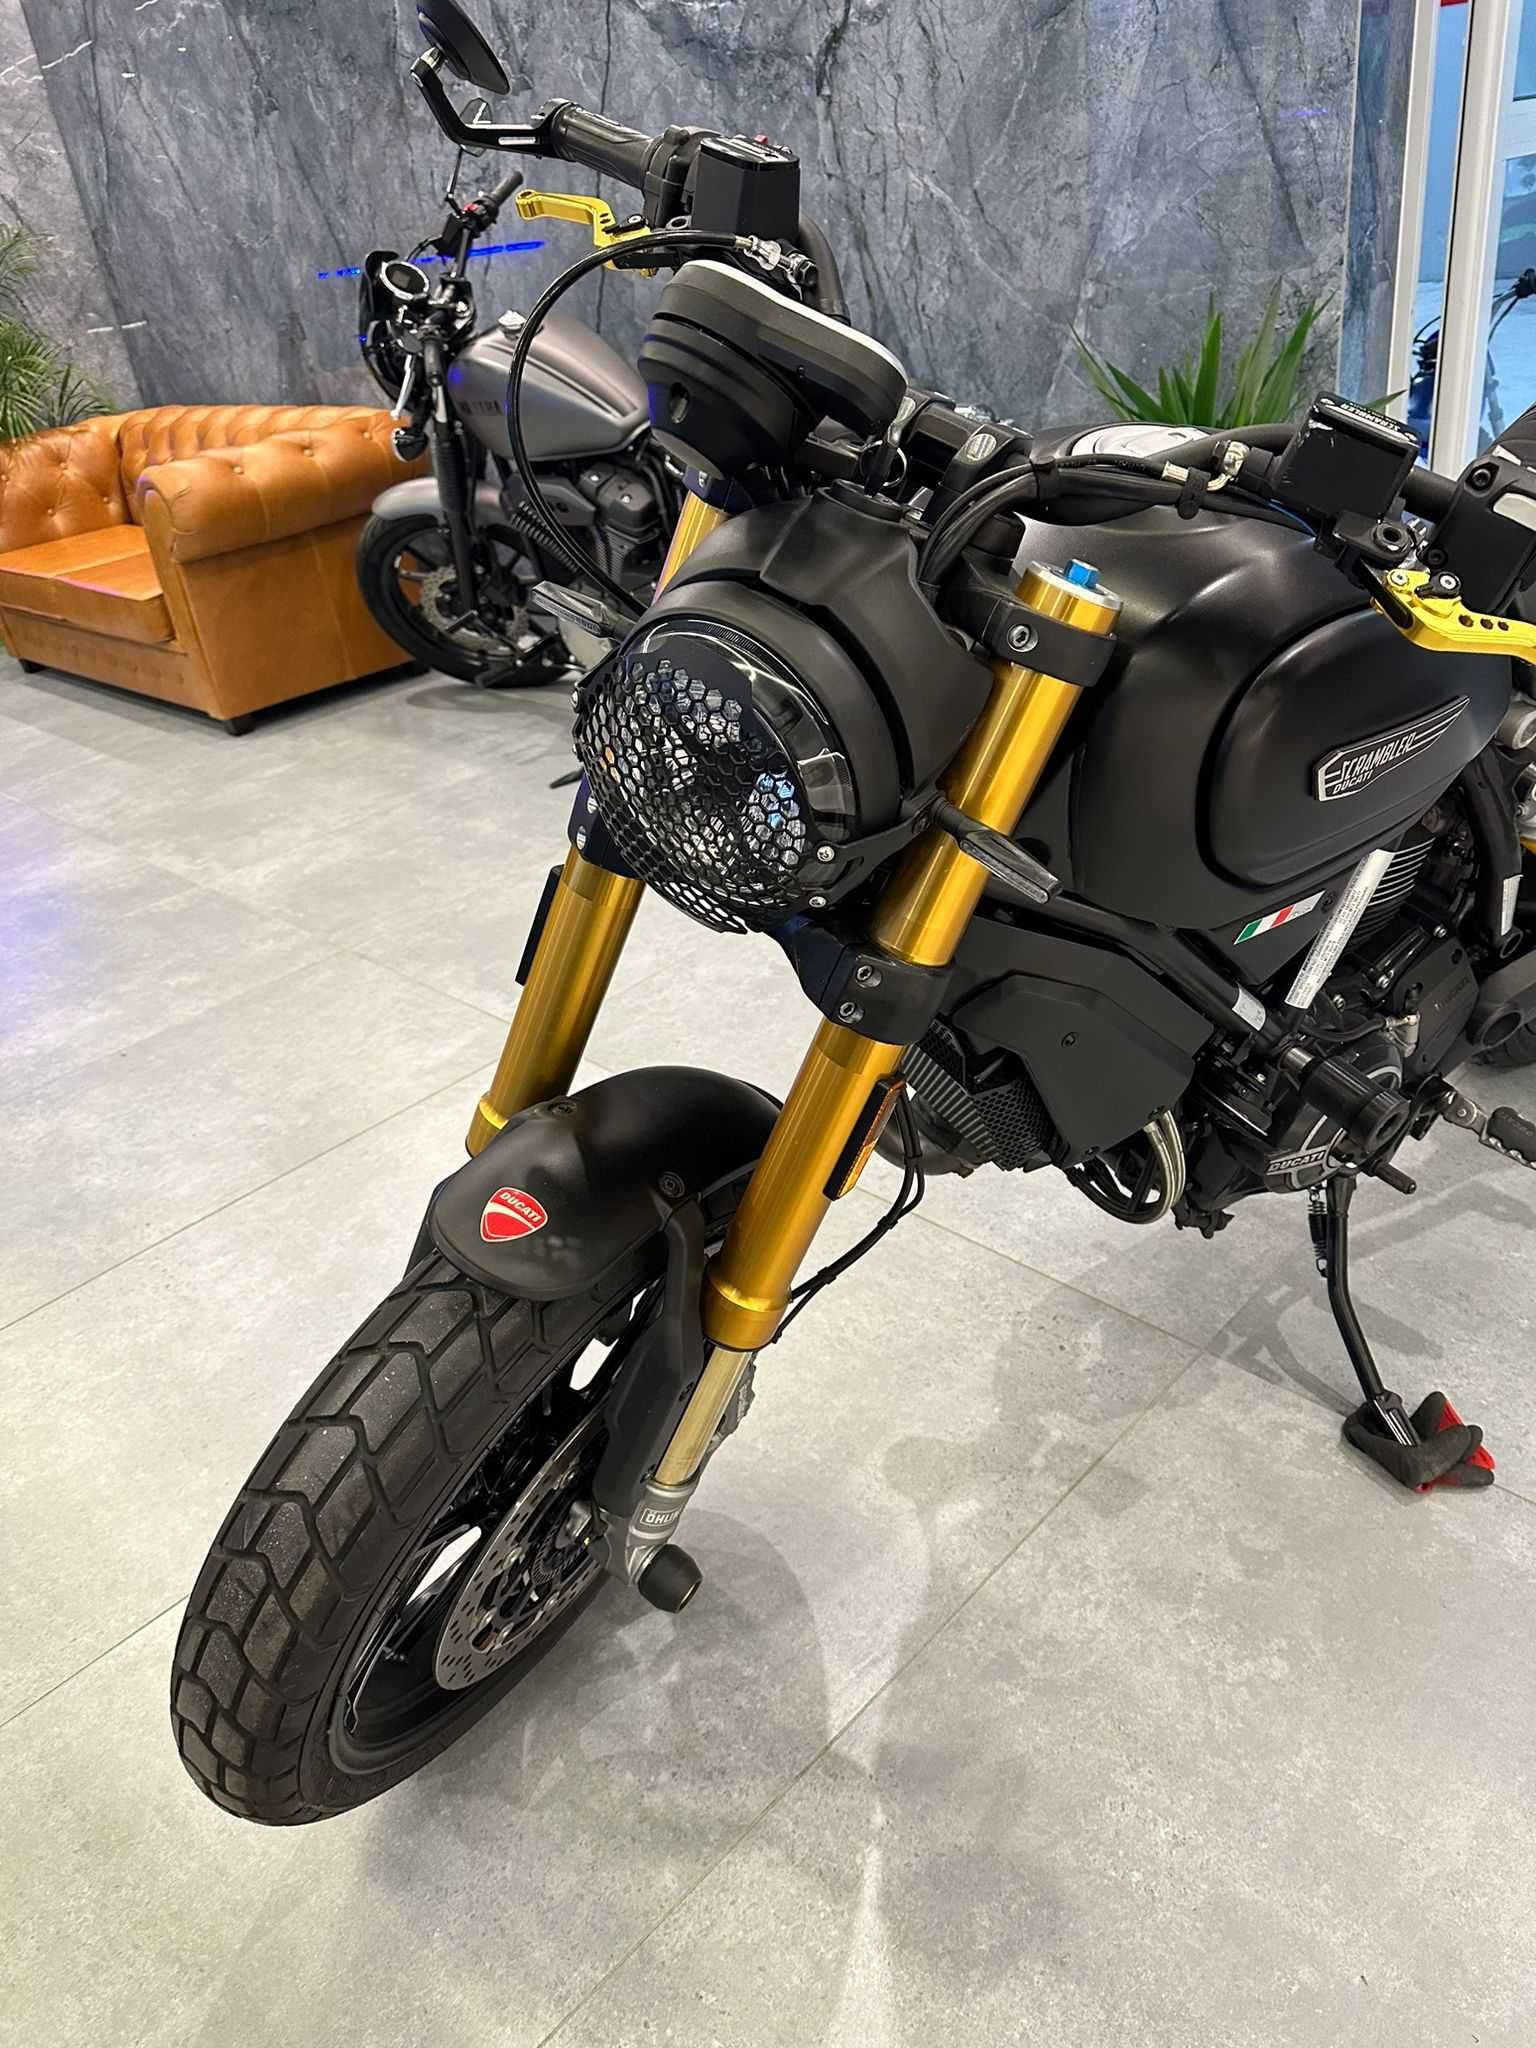 Ducati Scrambler 1100, 2018r, zarejestrowany, piękny, zamiana